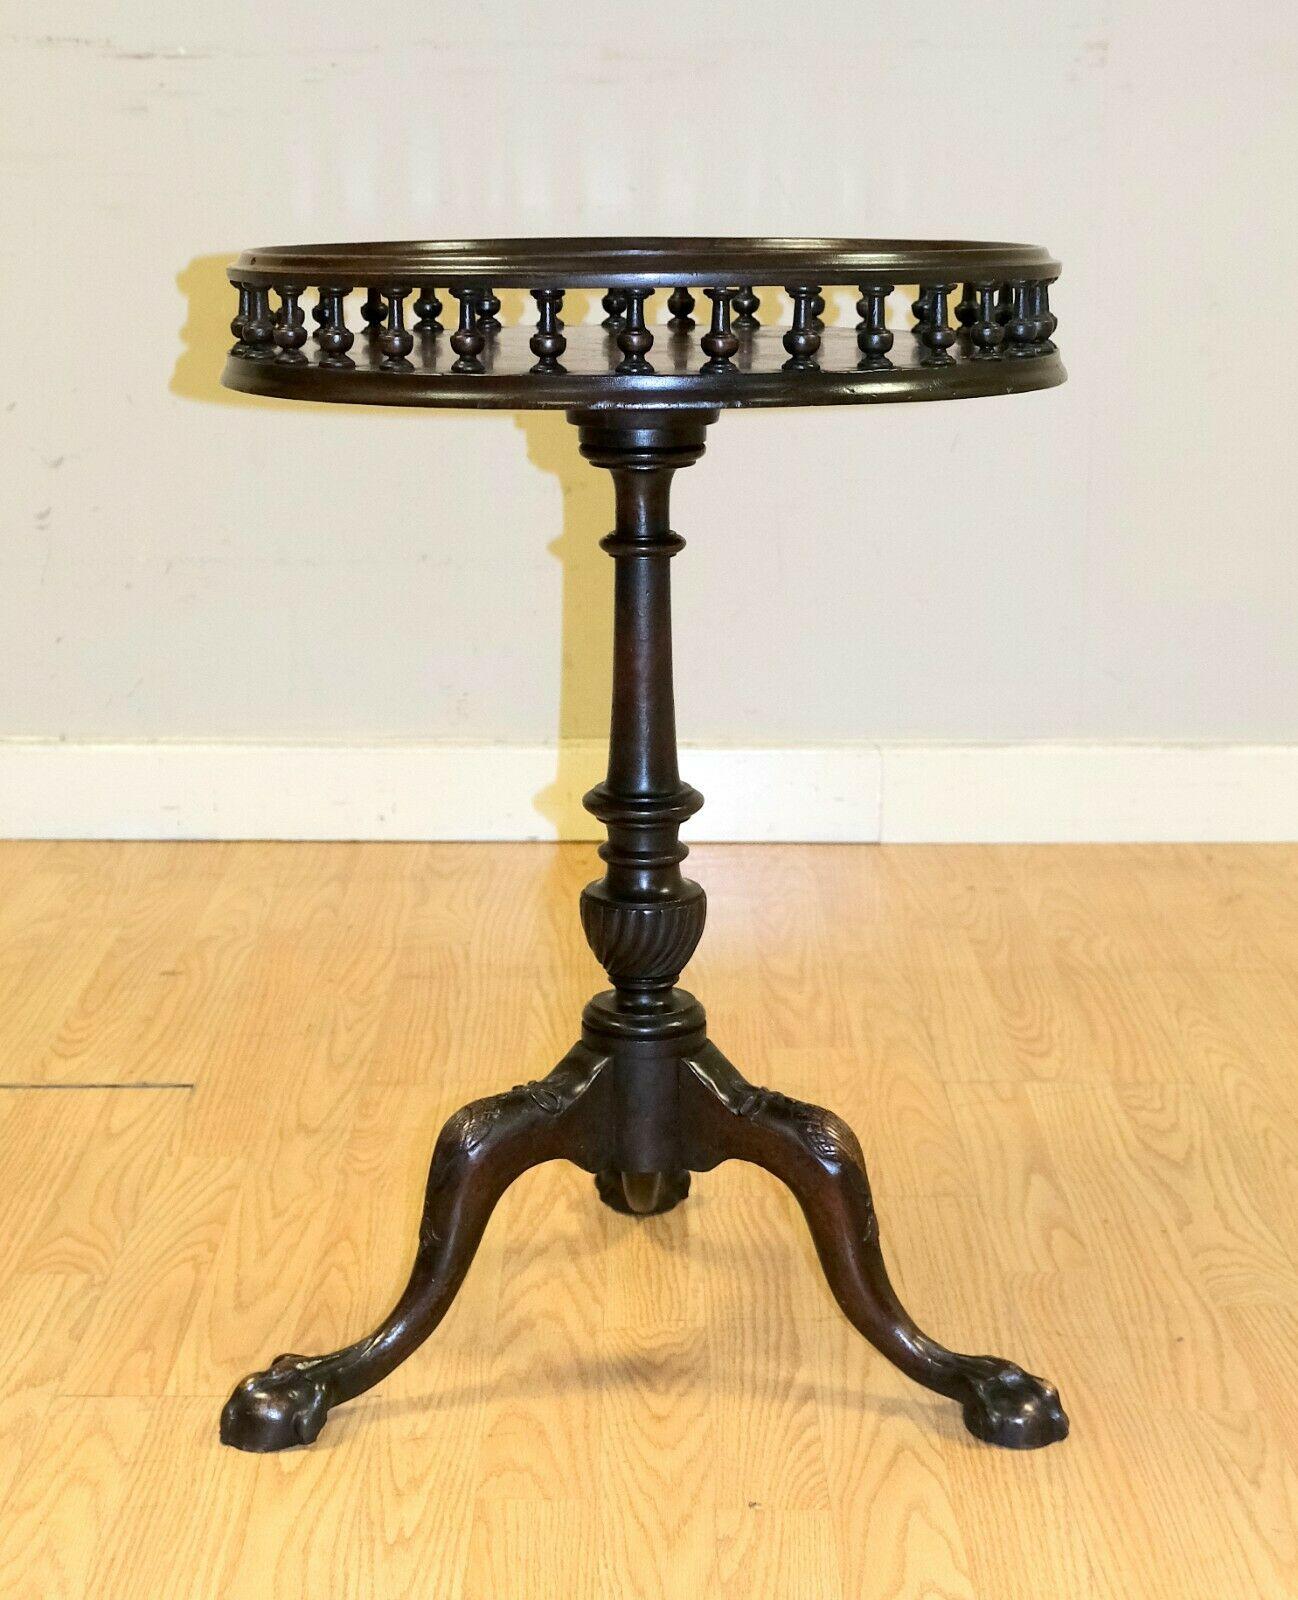 Nous sommes ravis d'offrir à la vente cette belle table d'appoint en acajou de style géorgien.

Cette table charmante et attrayante repose sur des pieds griffes tripodes et une base magnifiquement sculptée. Sur le dessus, montre une galerie de